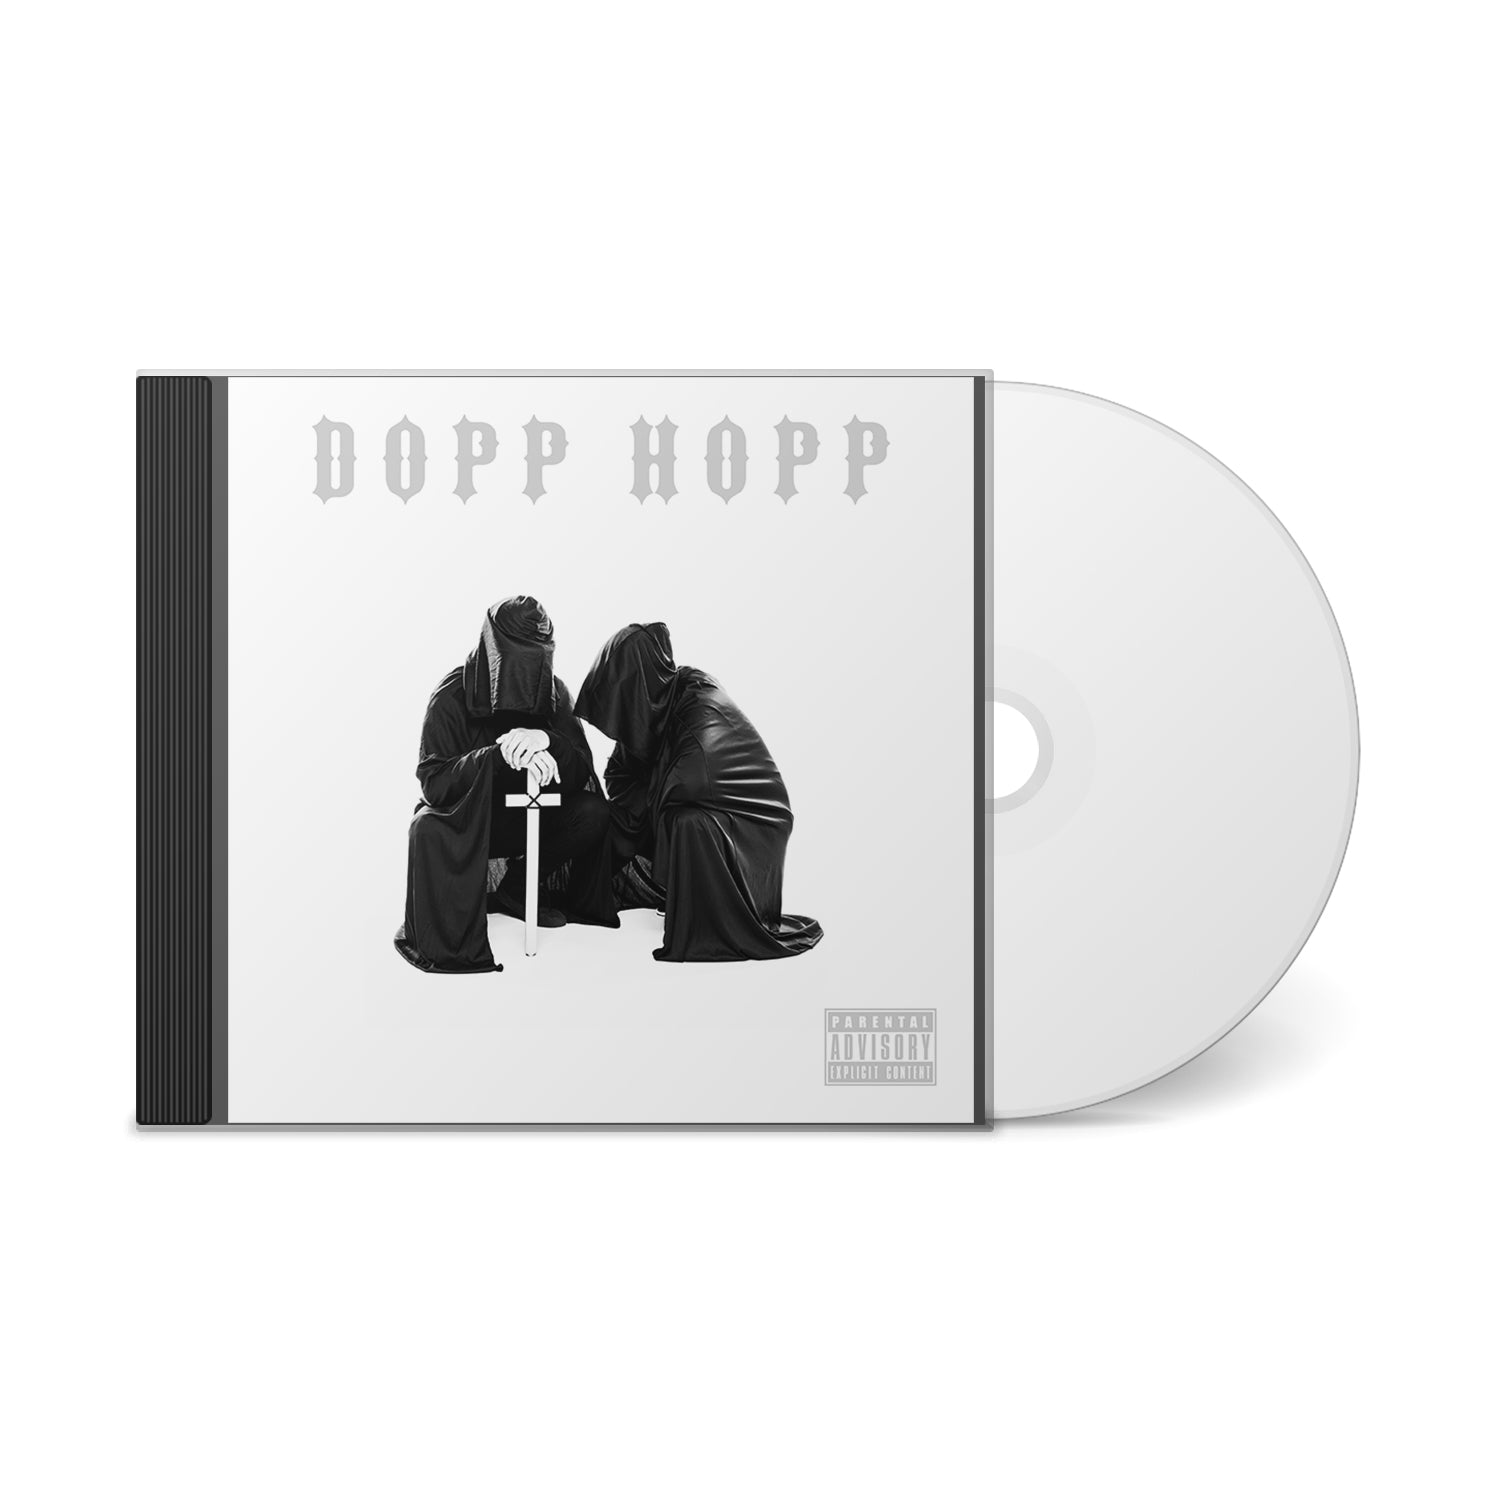 Dopp Hopp (CD)